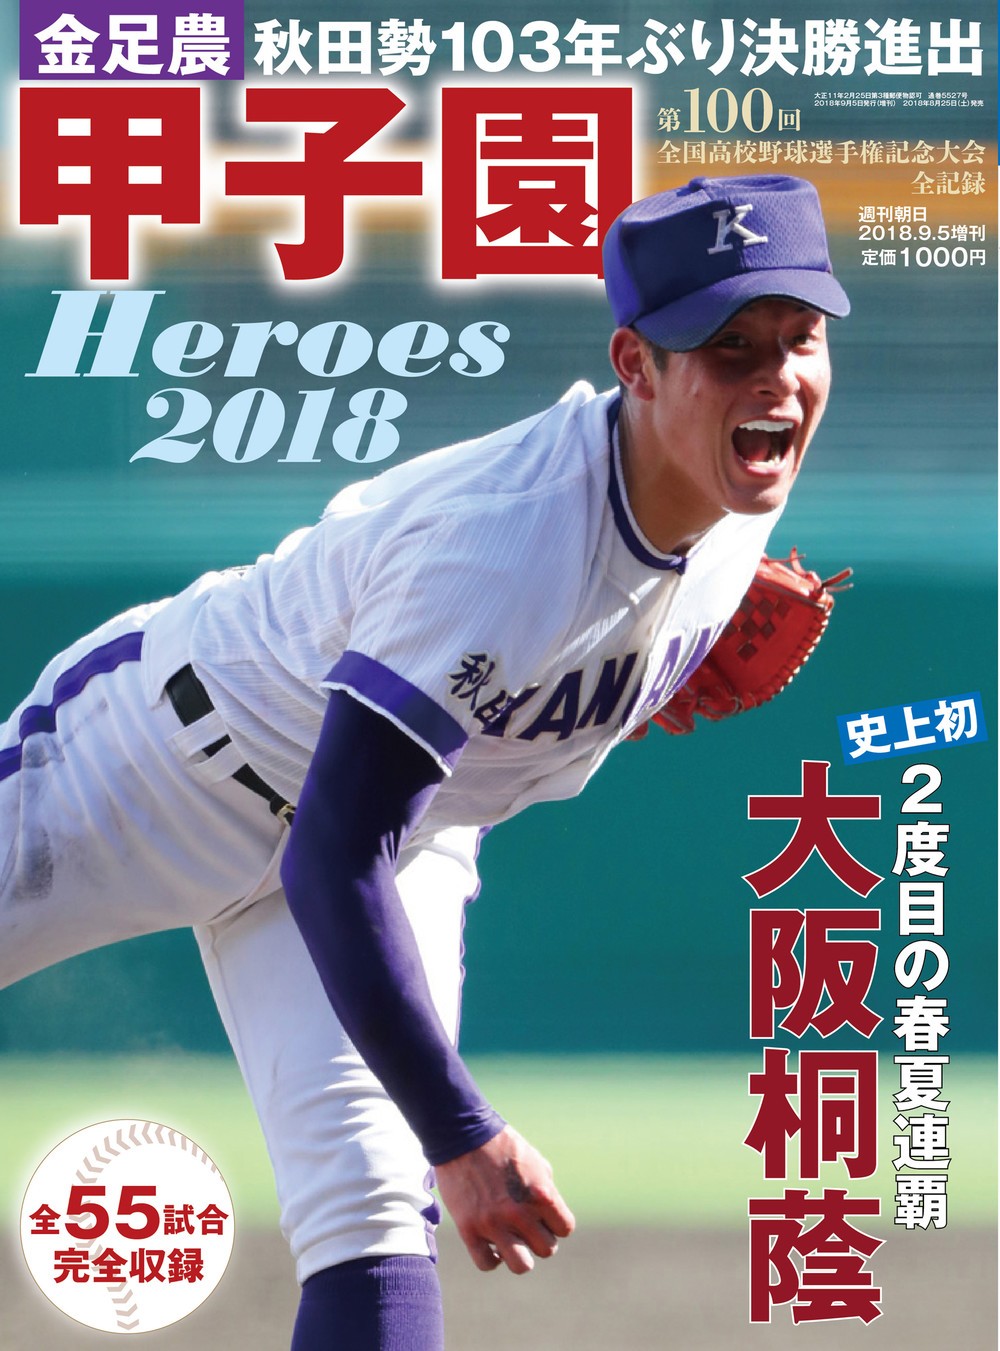 5年ぶりに復刊「甲子園 Heroes 2018」